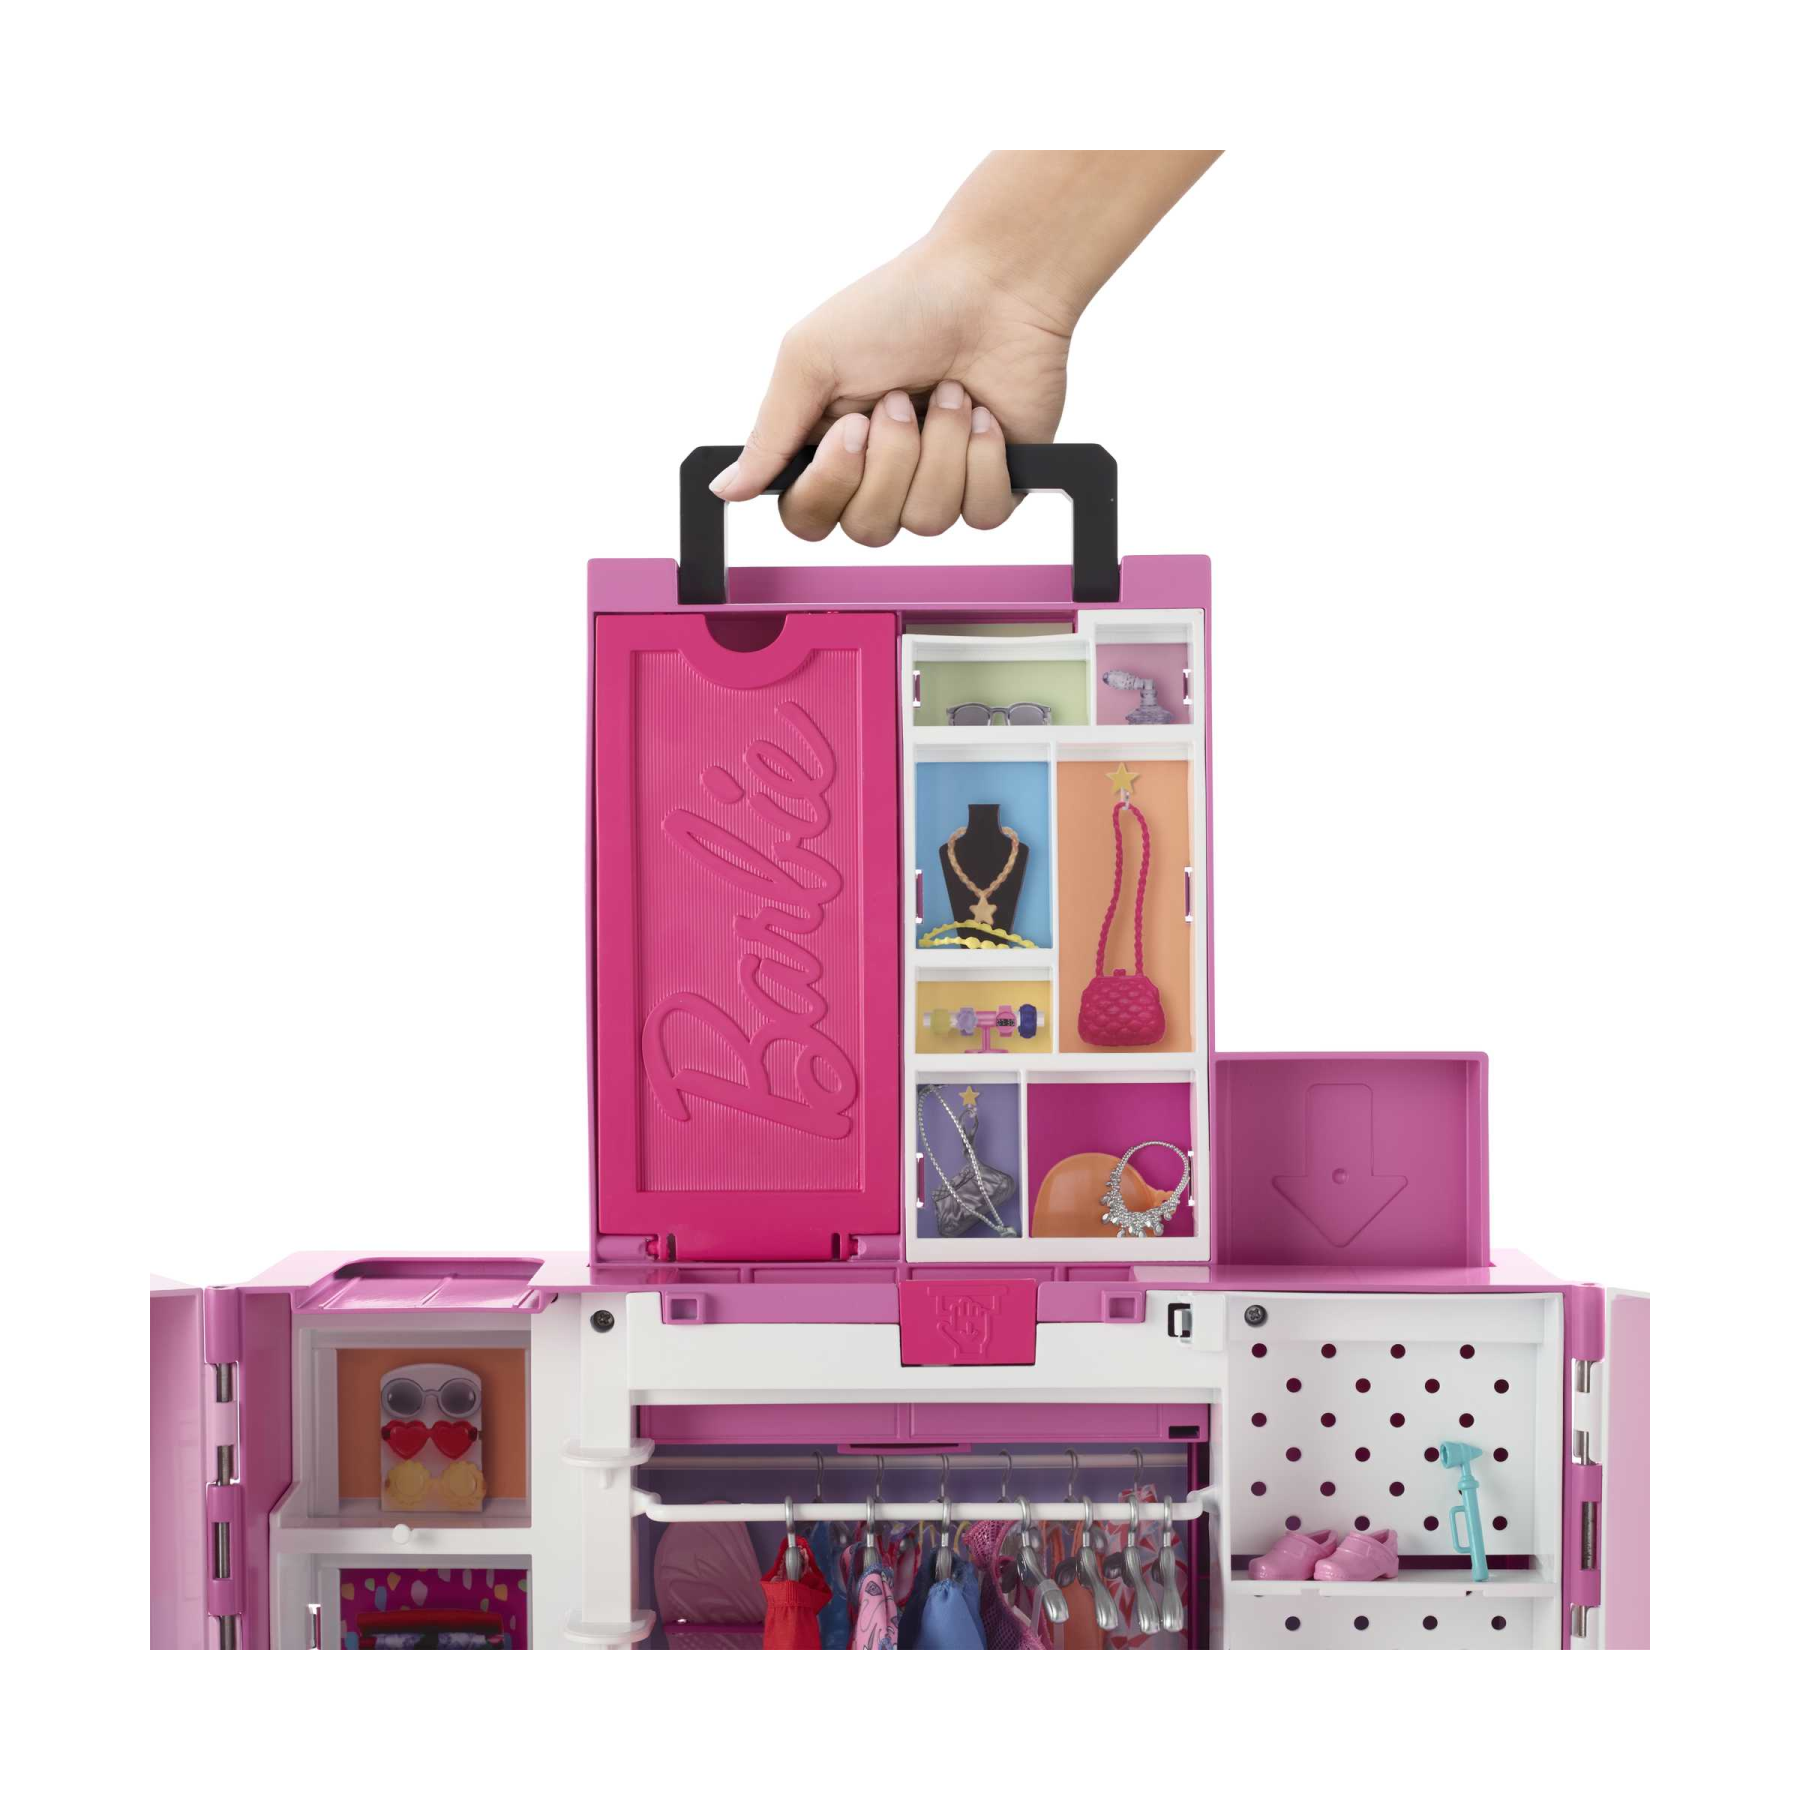 Barbie armadio dei sogni playset con bambola bionda, largo più di 60 cm, 15+ aree per riporre gli accessori, specchio, scivolo per biancheria, 30+ outfit e accessori, dai 3 anni in su - Barbie